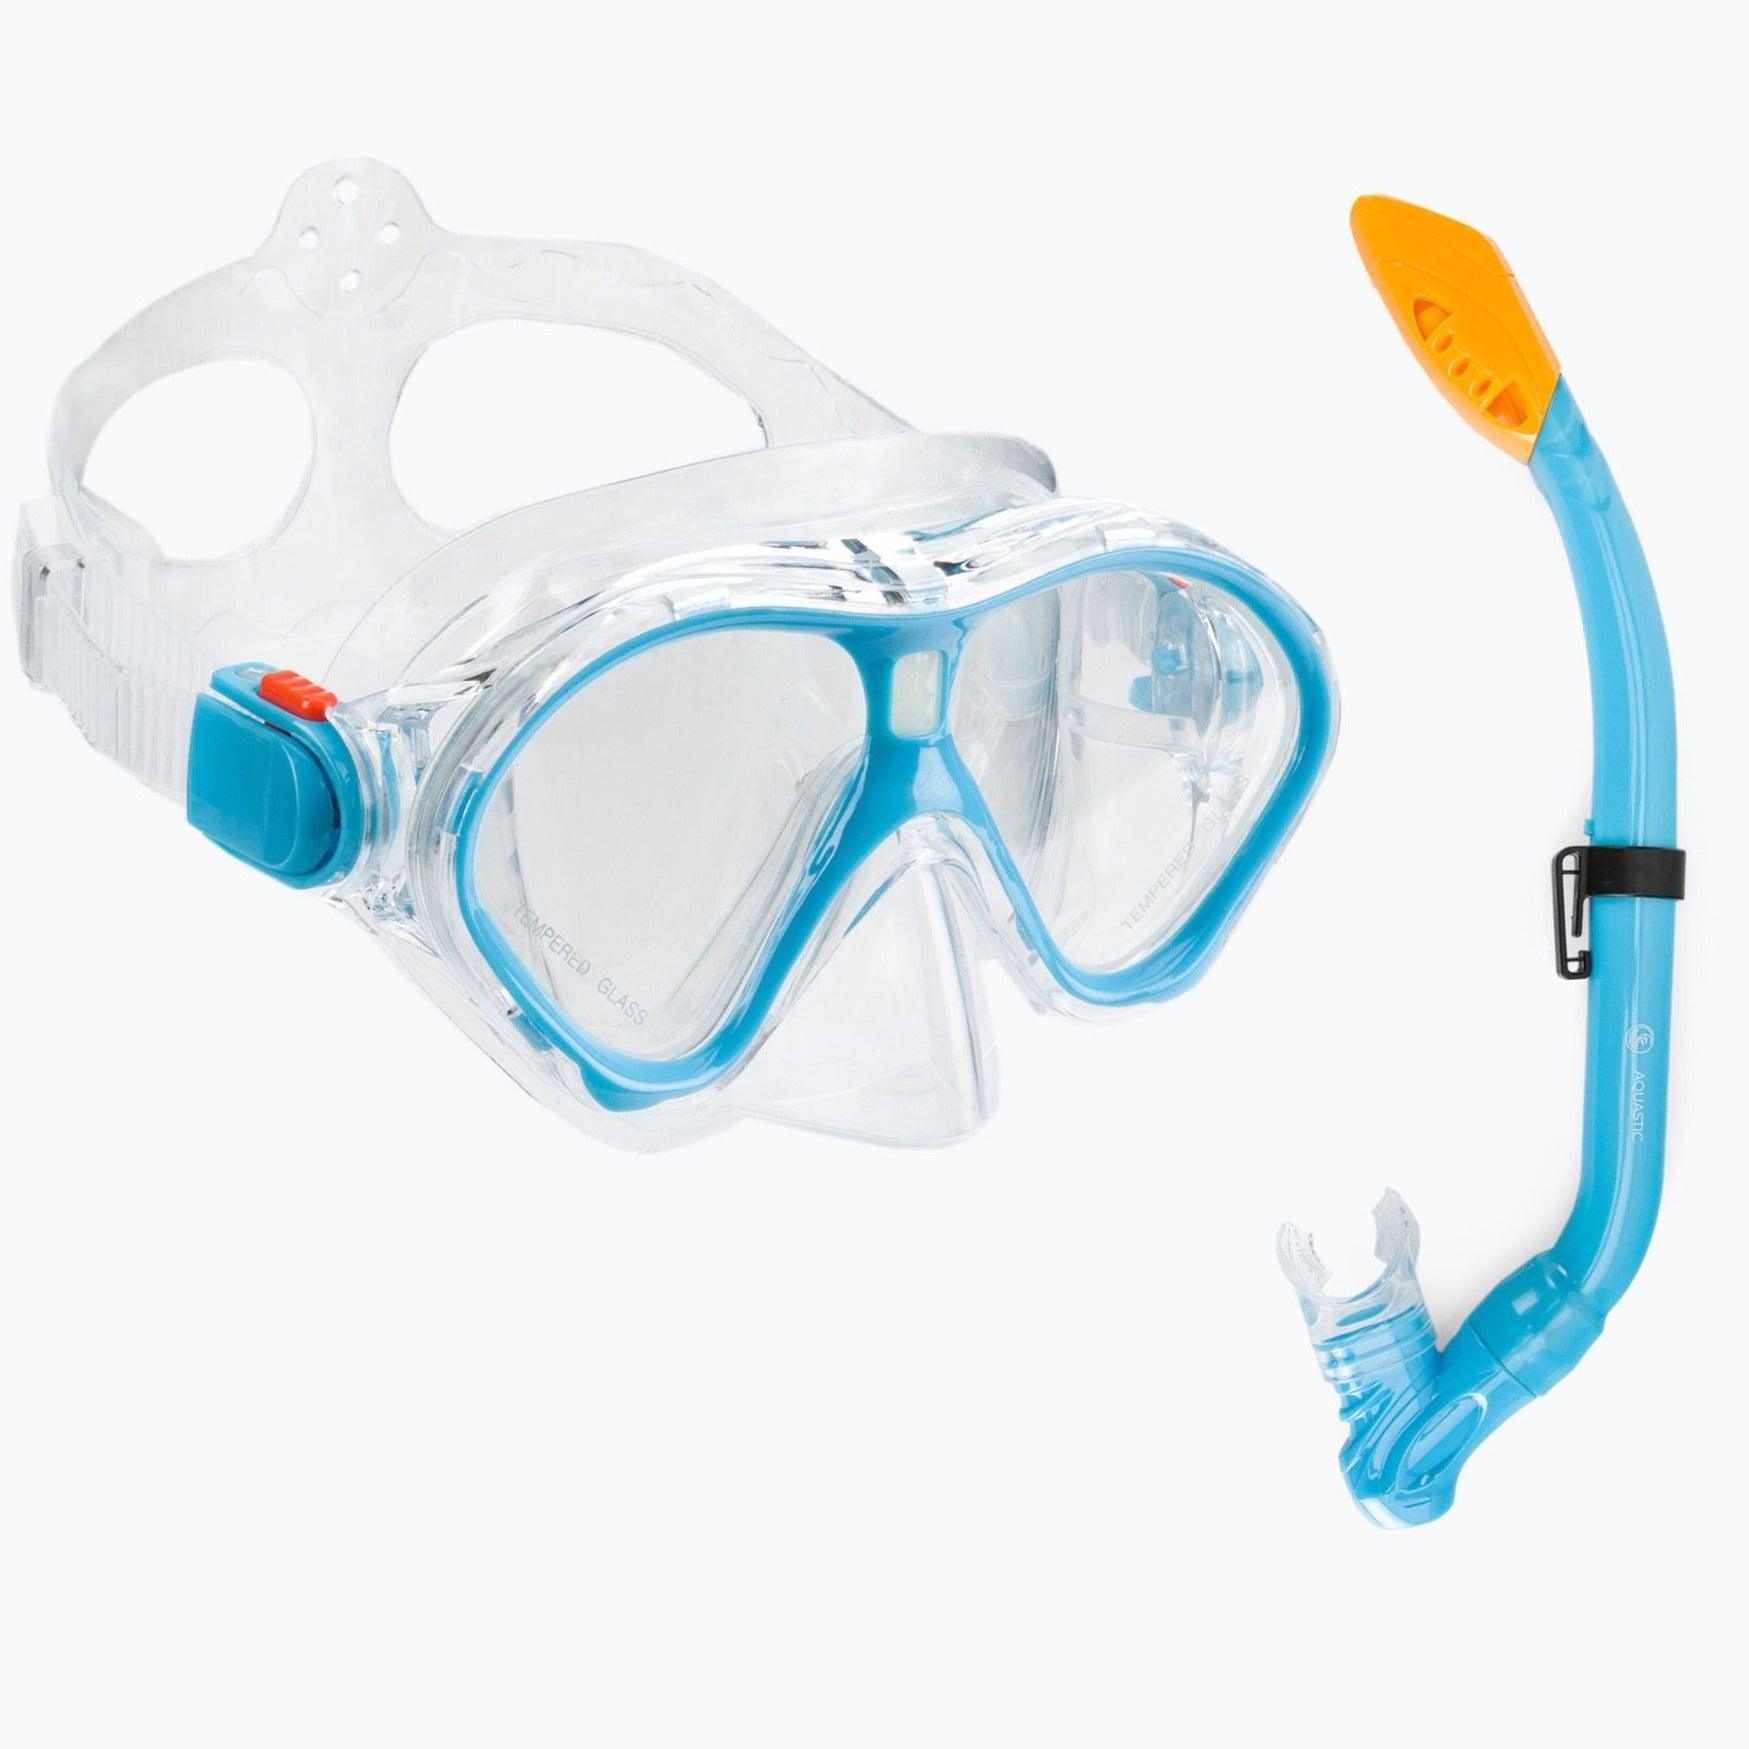 Aquastique: masque et tuba pour les enfants